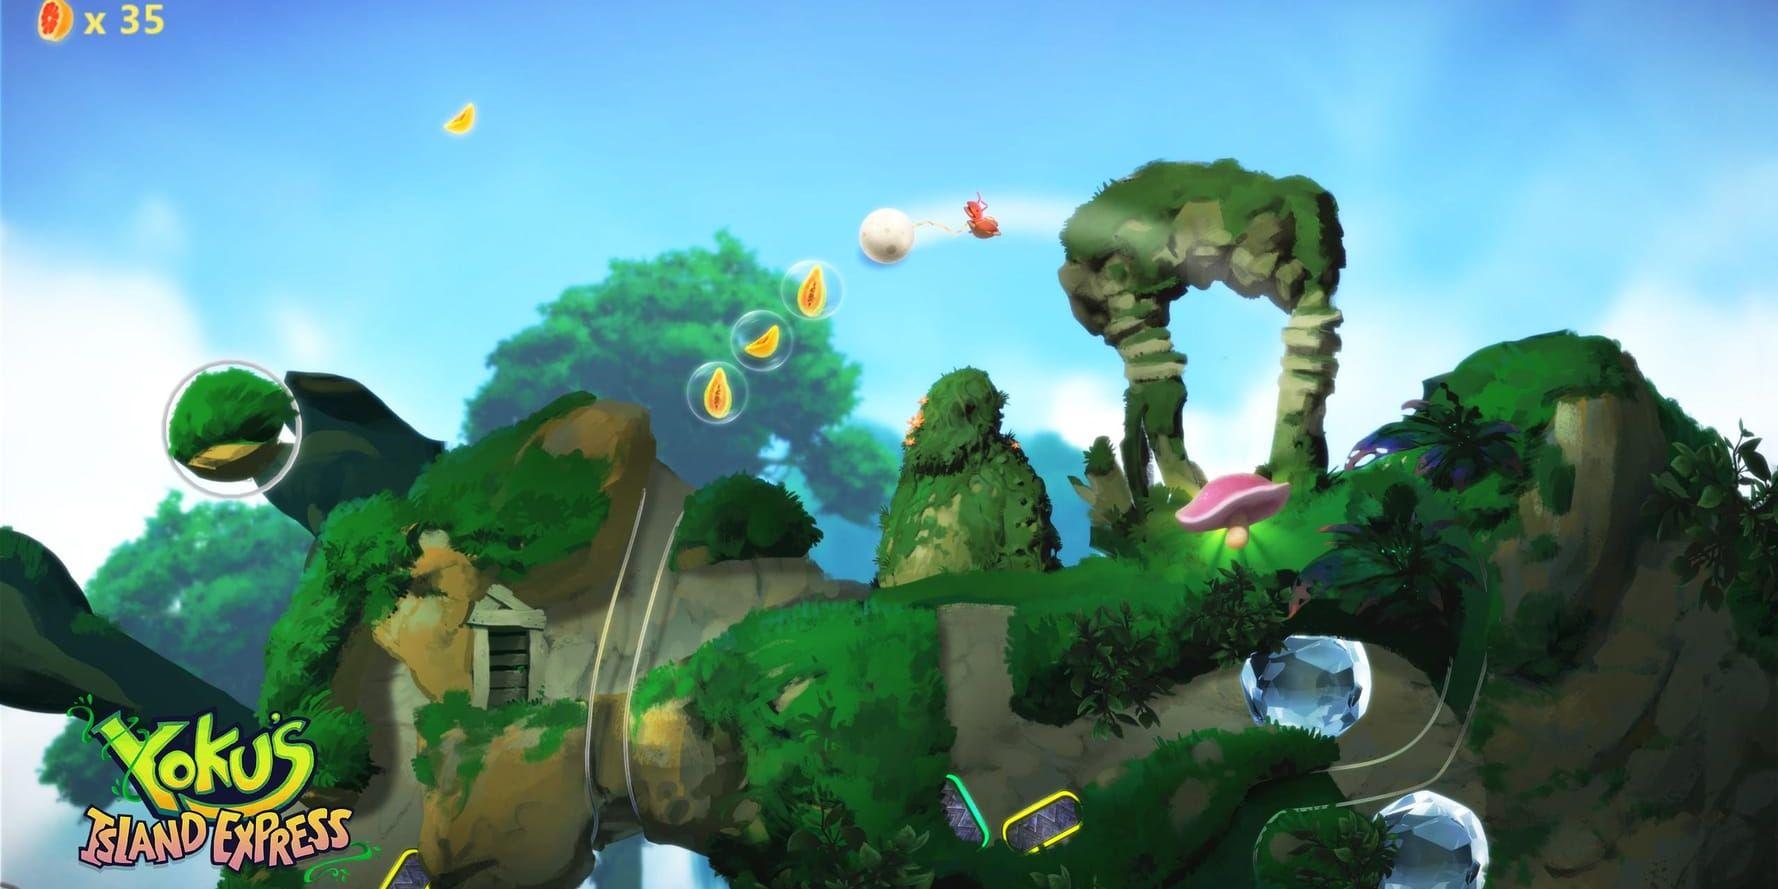 "Yoku's island express" är något så ovanligt som ett flipperspel i en öppen värld. Spelaren styr dyngbaggen Yoku i hans uppdrag som brevbärare. Pressbild